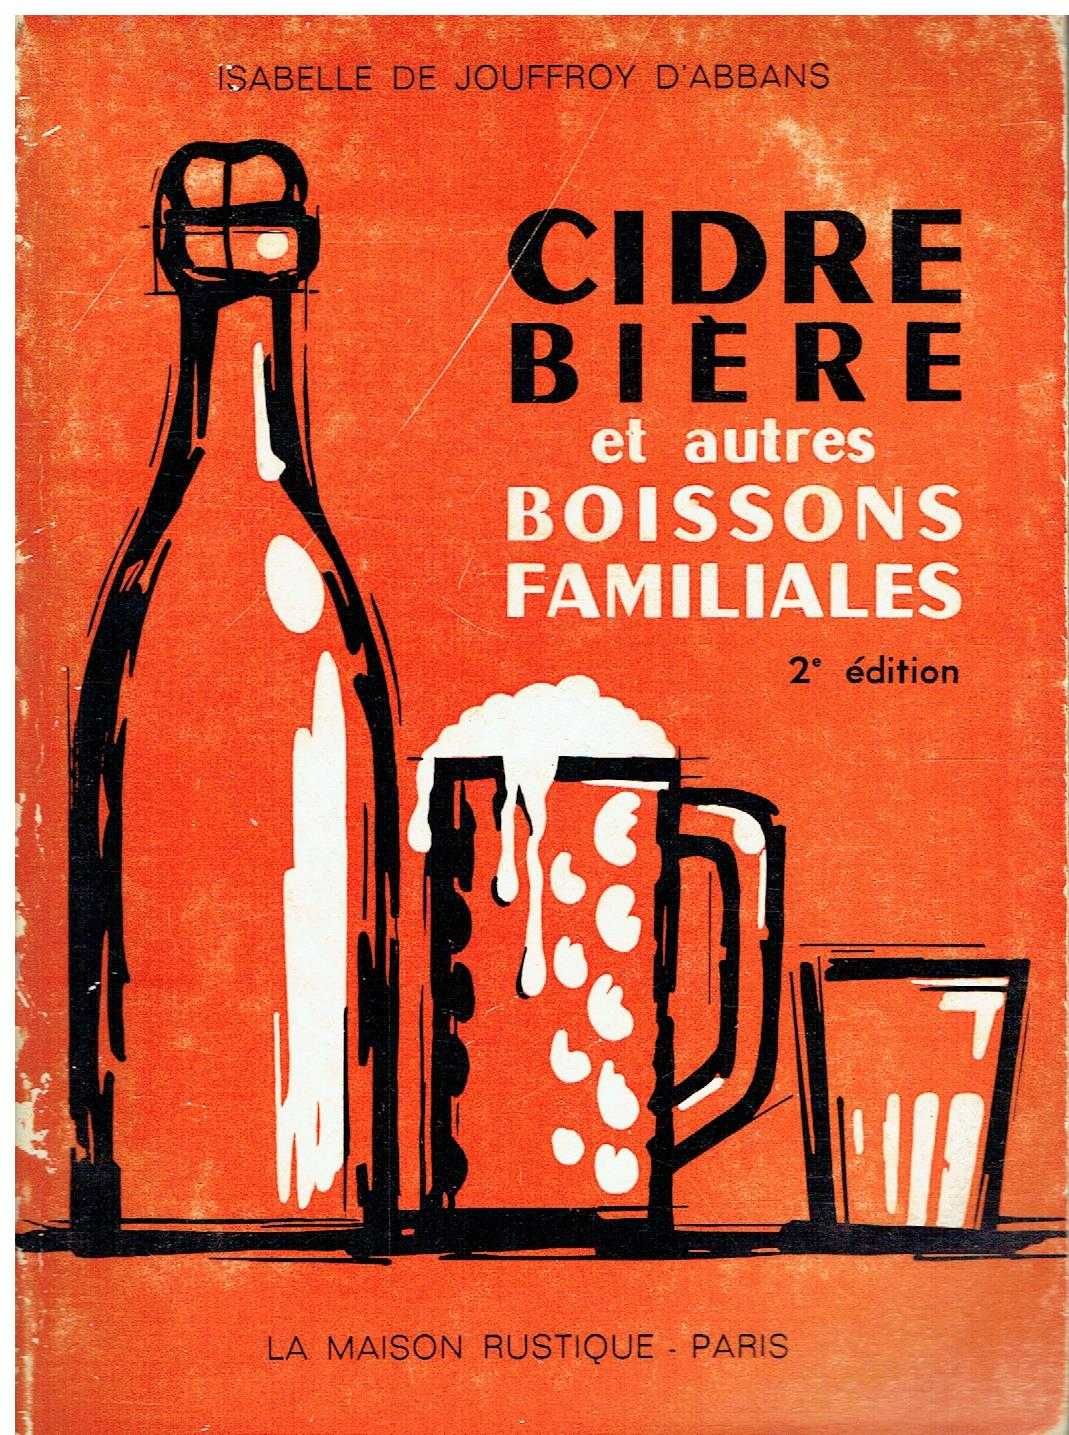 9615

Cidre - Bière et autres boissons familiales